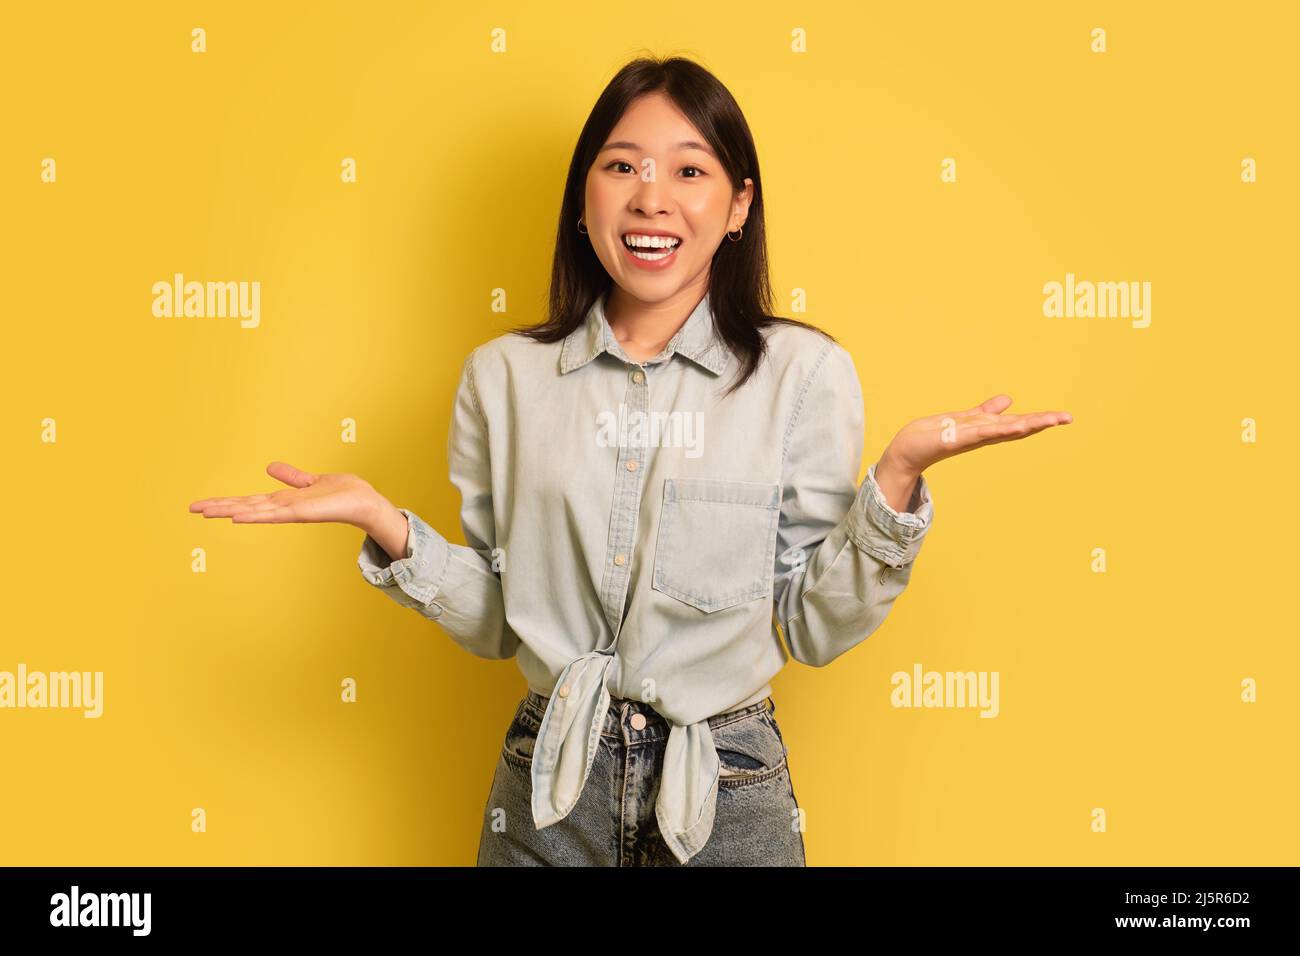 Je ne sais pas. Une jeune femme asiatique perplexe en haussant les épaules et en souriant à l'appareil photo sur fond jaune de studio Banque D'Images